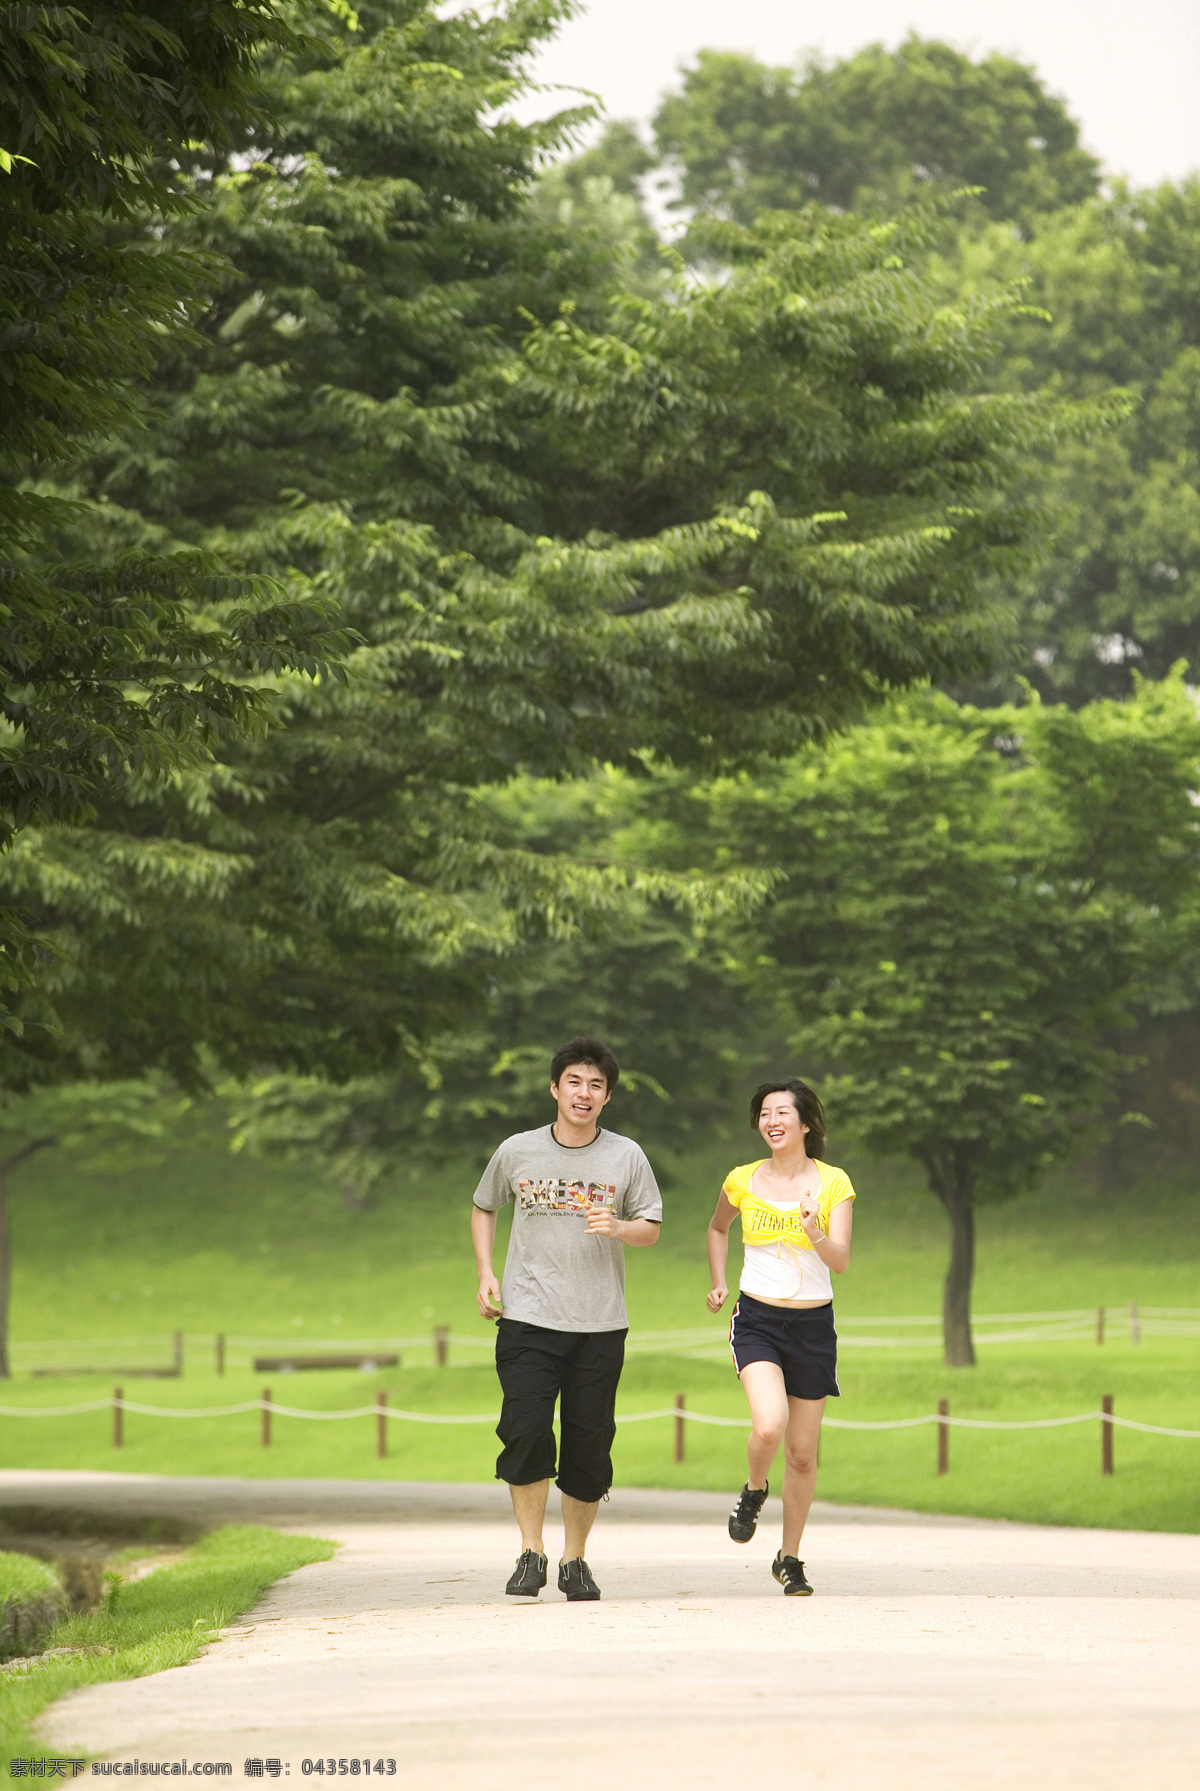 正在 慢跑 男女 户外 户外运动 女孩 男孩 漂亮 美丽 健身 好身材 草地 公园 跑步 锻炼身体 生活人物 人物图片